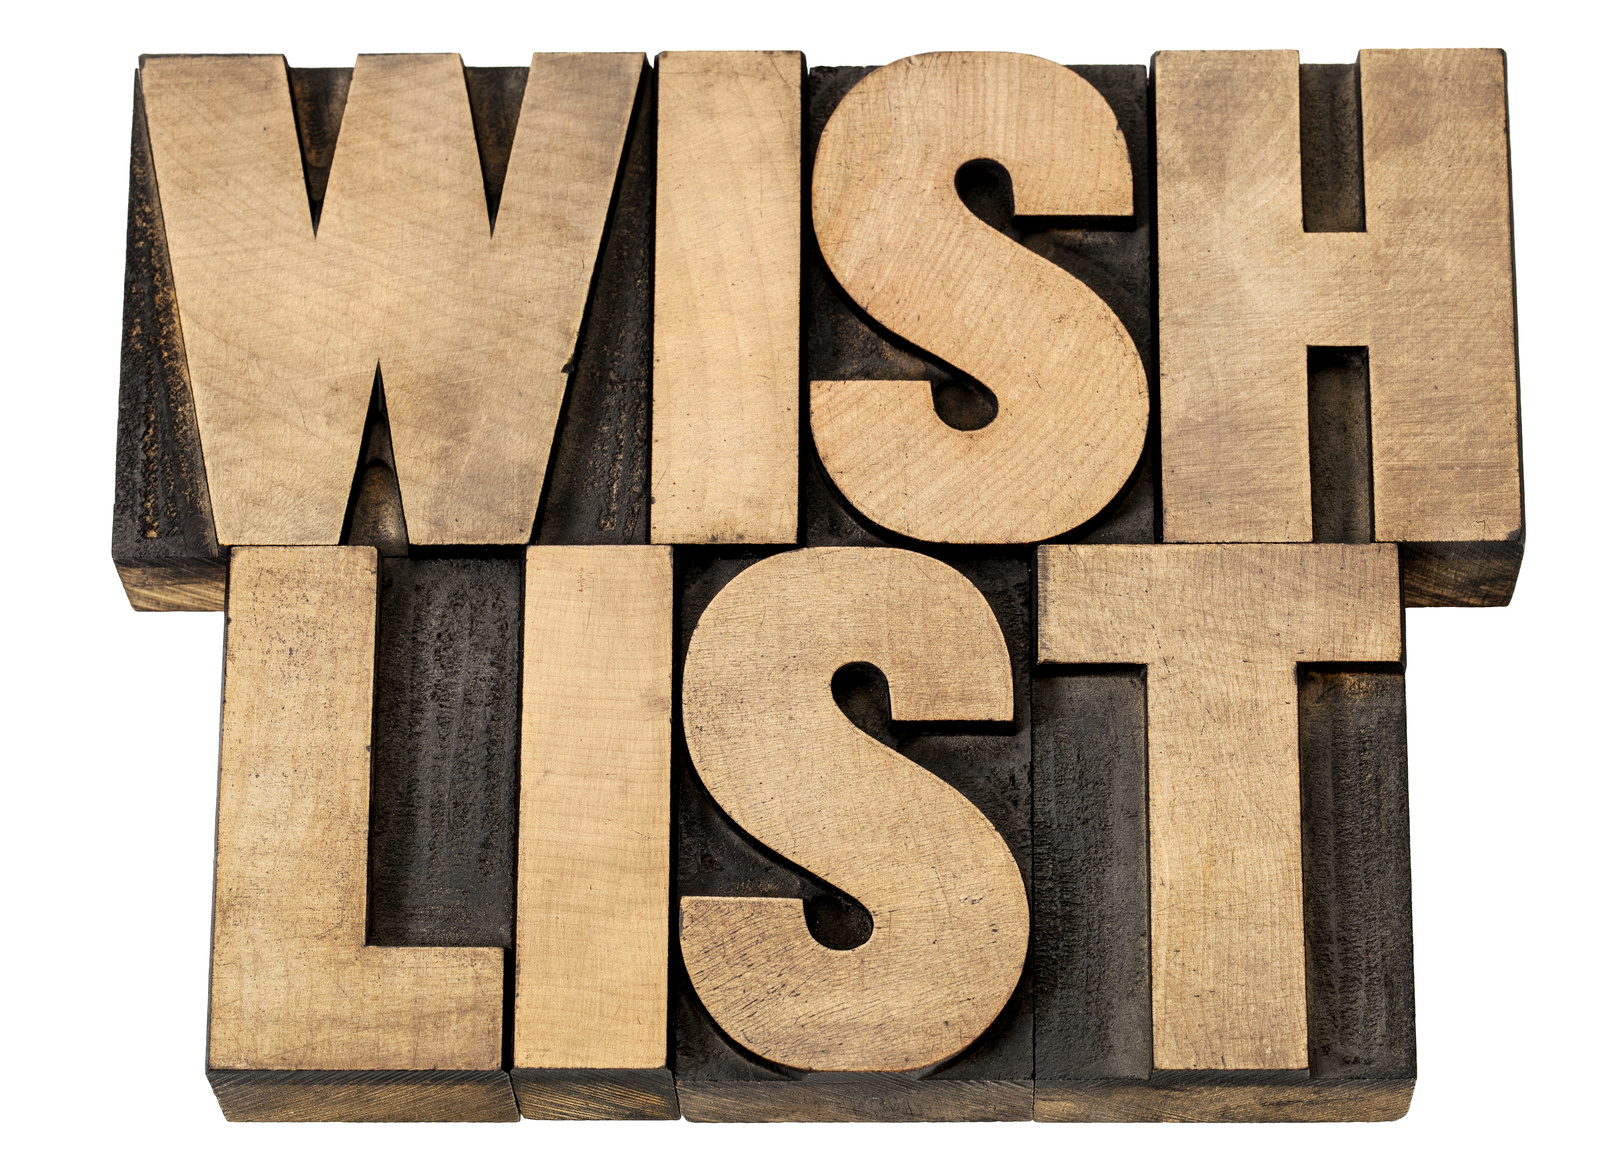 My Wish List for WWDC